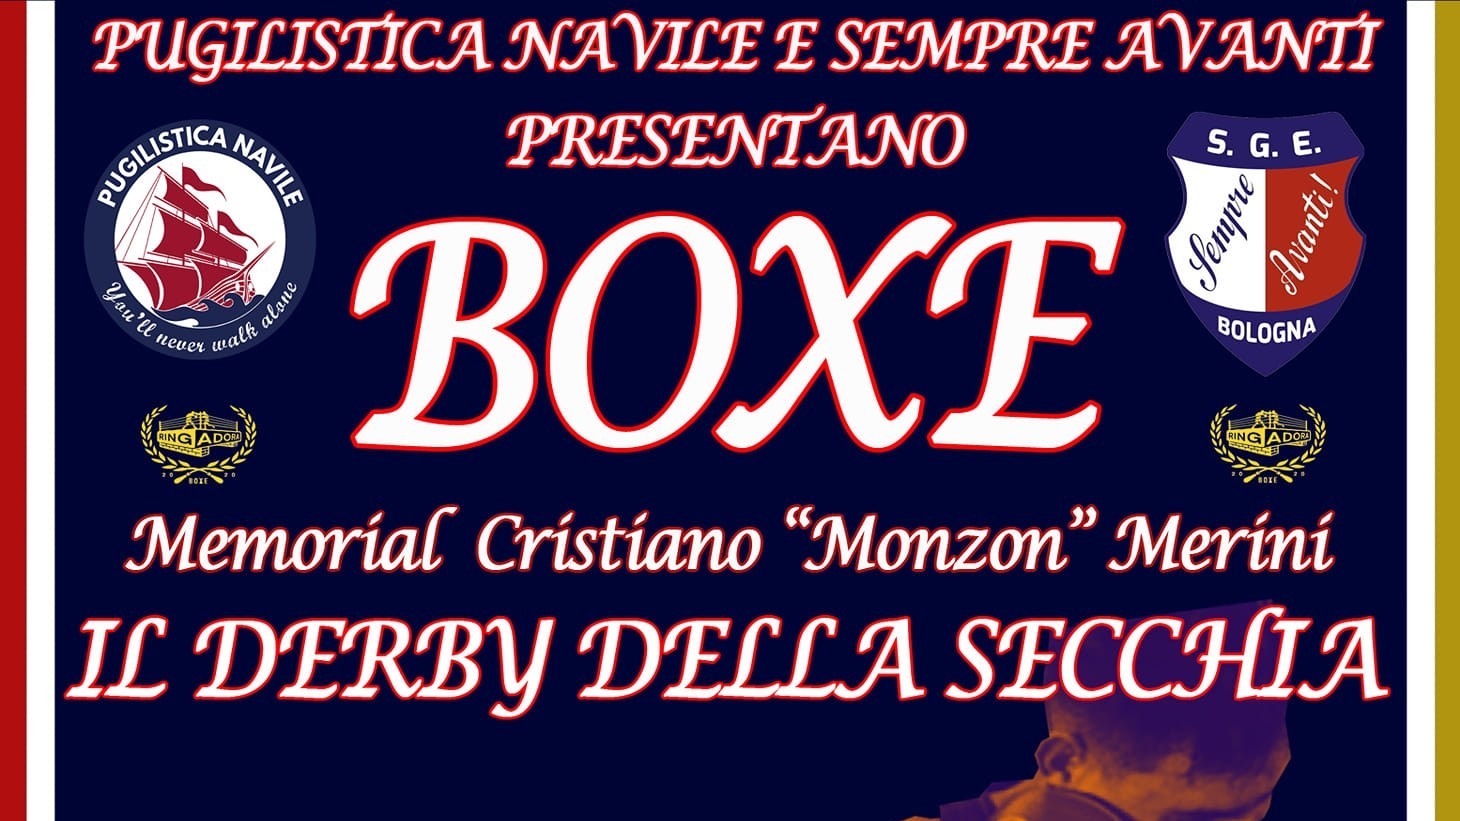 Il Derby Della Secchia
Memorial Cristiano "Monzon" Merini